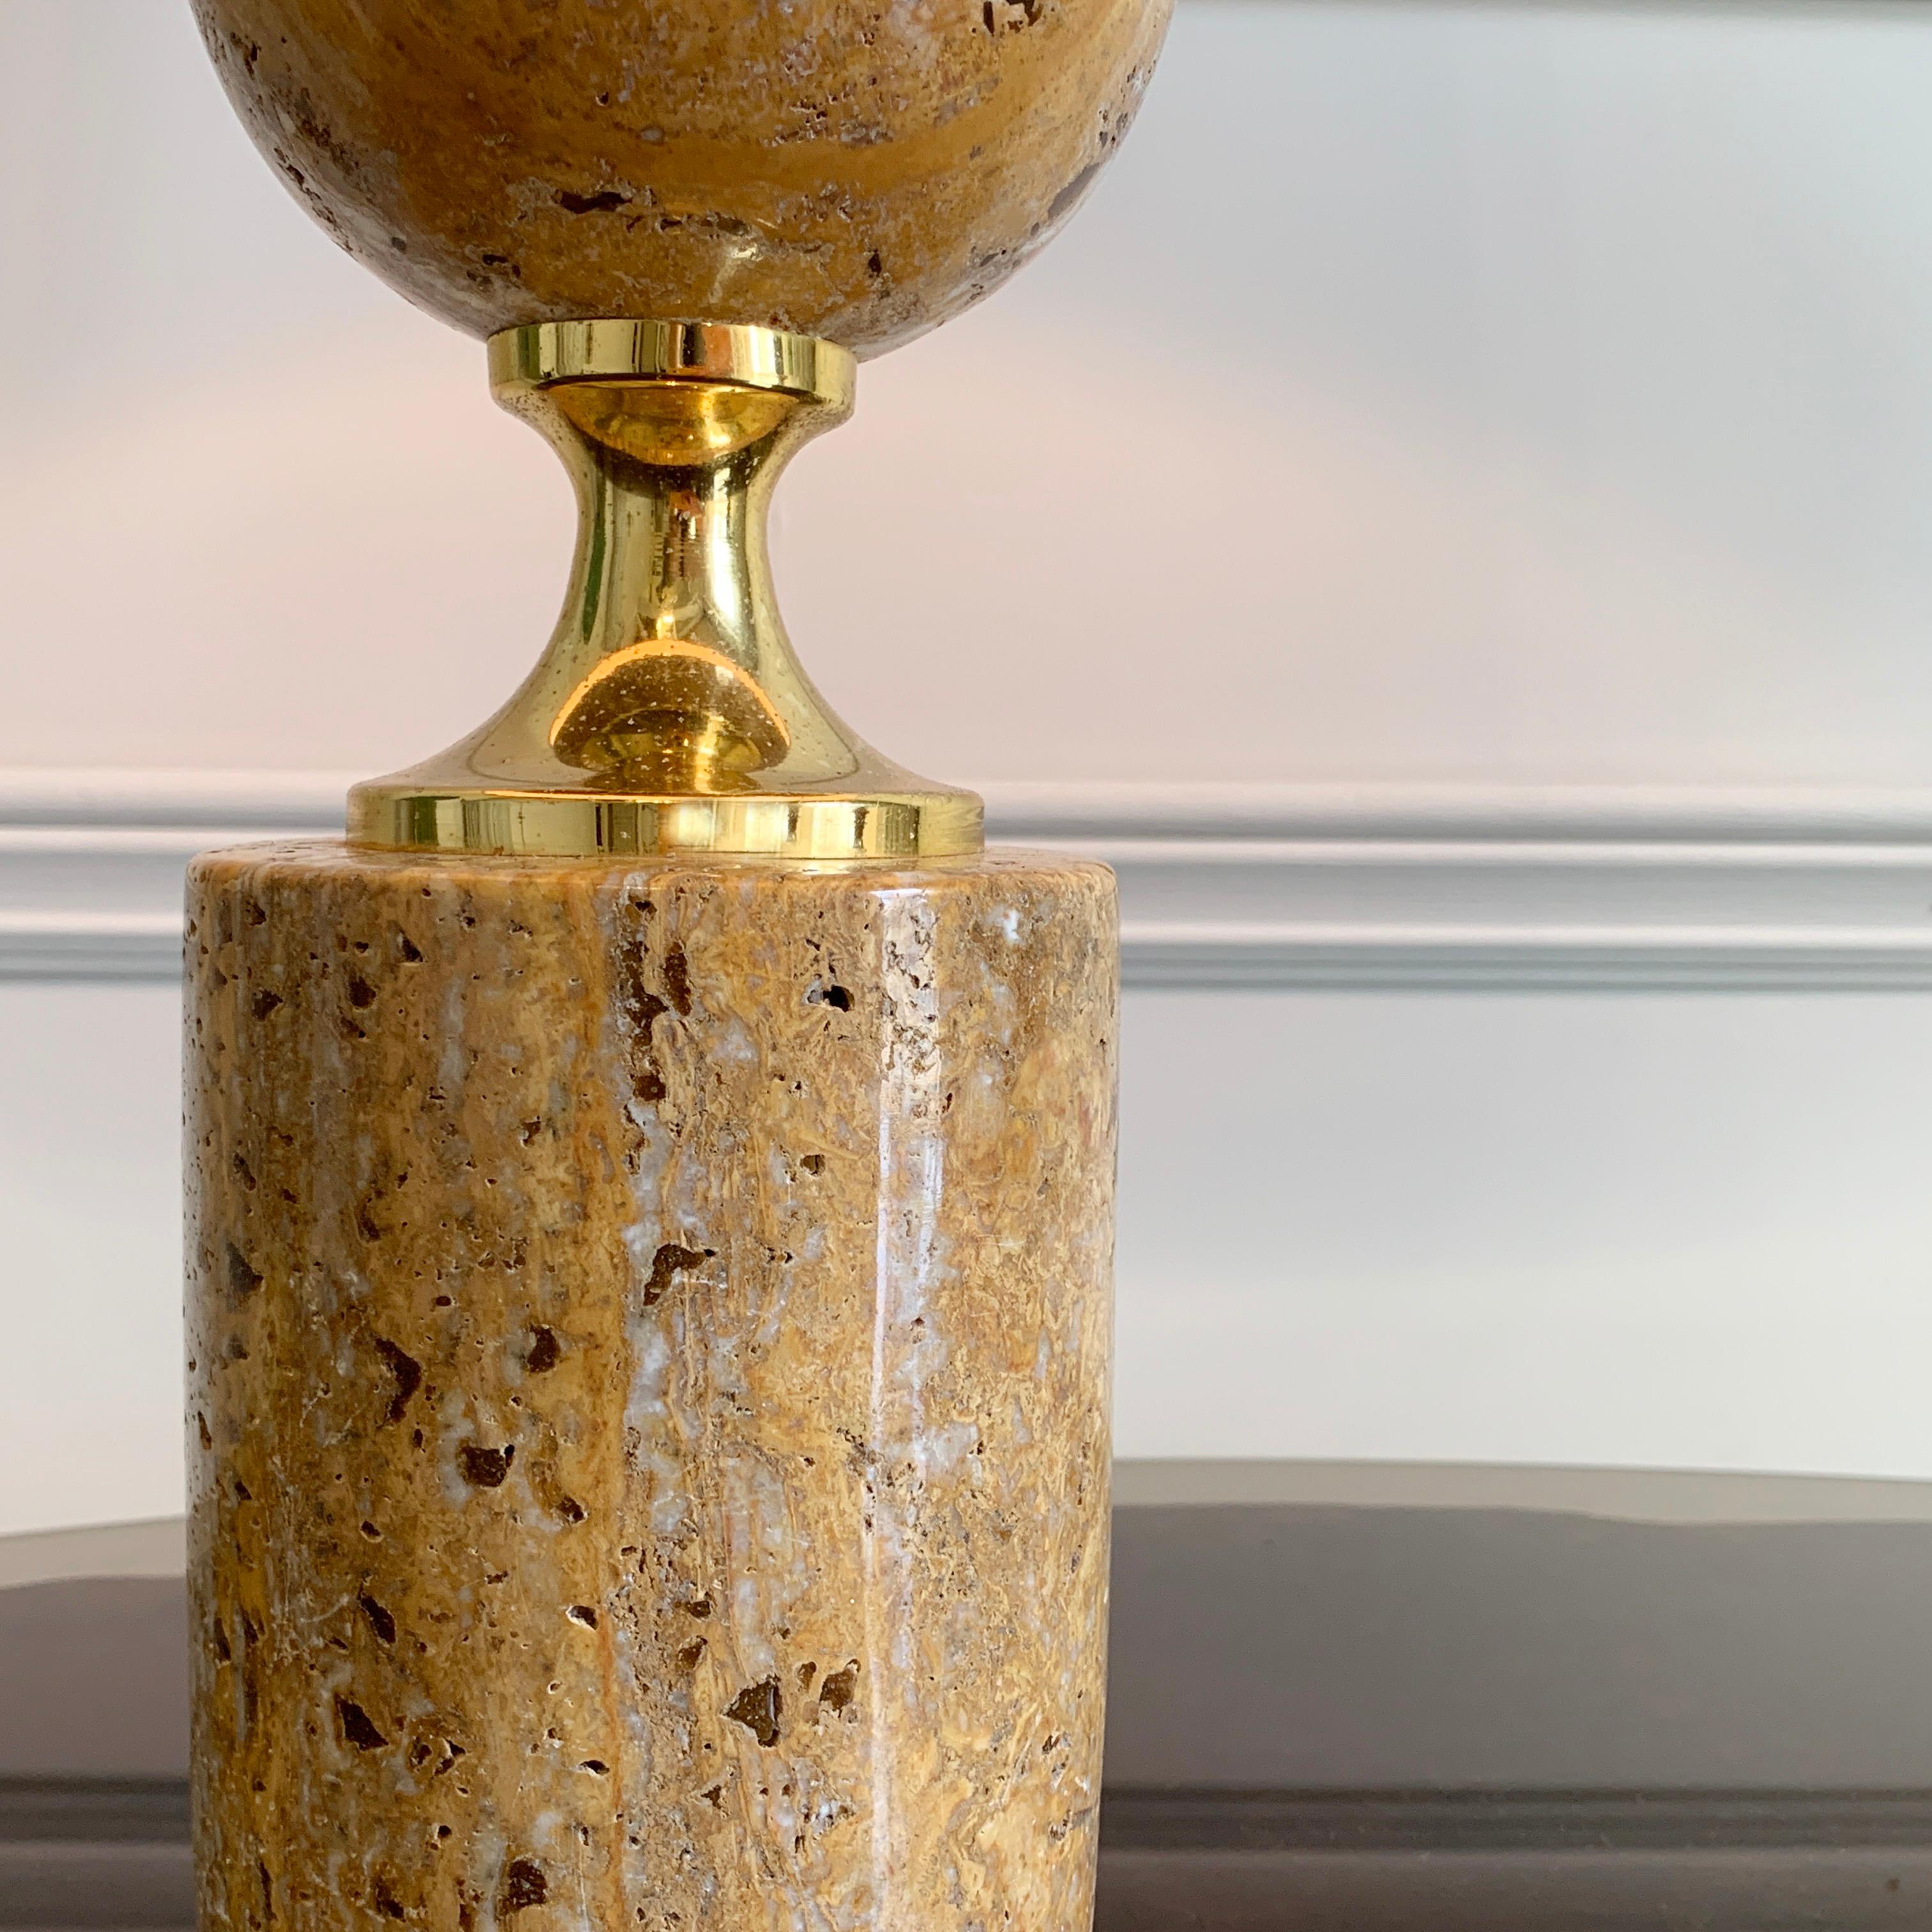 Une belle et étonnante lampe de table en travertin et métal doré des années 1970, conçue par Philippe Barbier. 

La lampe a été équipée d'un nouvel abat-jour neutre, et est en excellent état vintage.

Dimensions avec abat-jour : 53,5 cm de